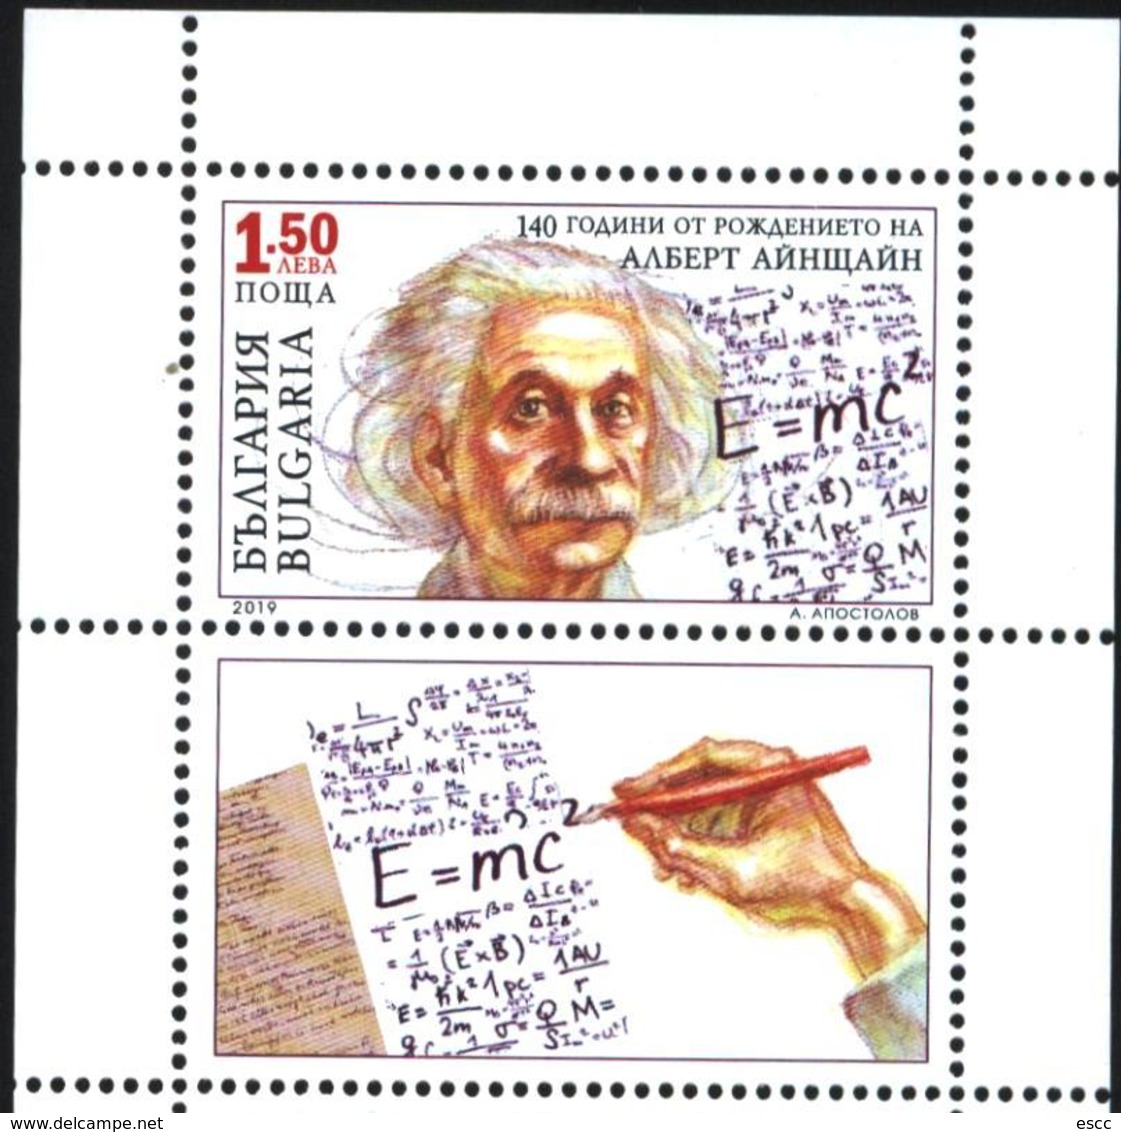 Mint Stamps Albert Einstein 2019 From Bulgaria - Albert Einstein